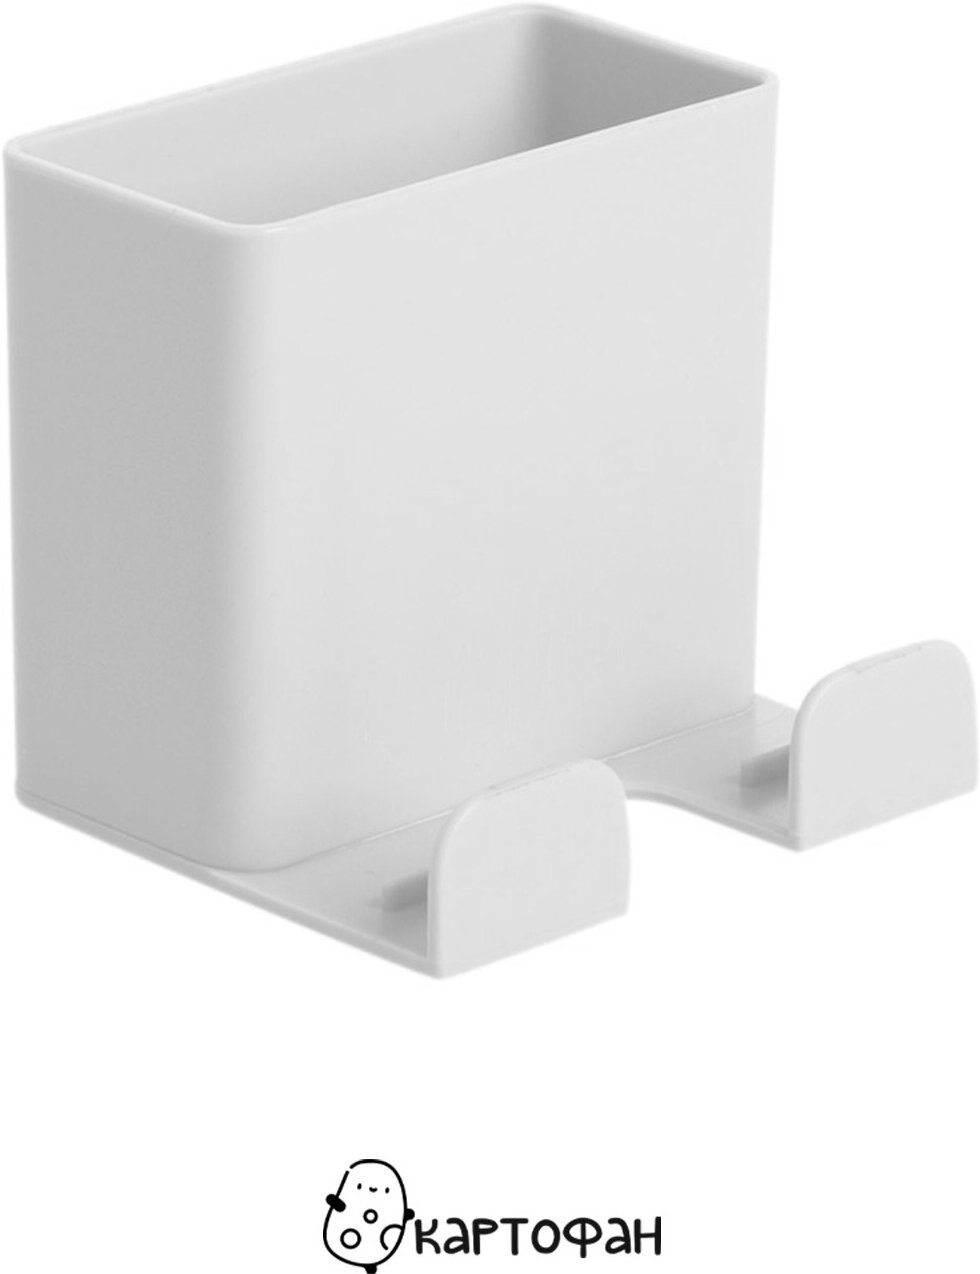 Настенный держатель для телефона (пластиковая подставка для смартфона, пульта, электроники) подвесной органайзер шириной до 6,5 см, белый